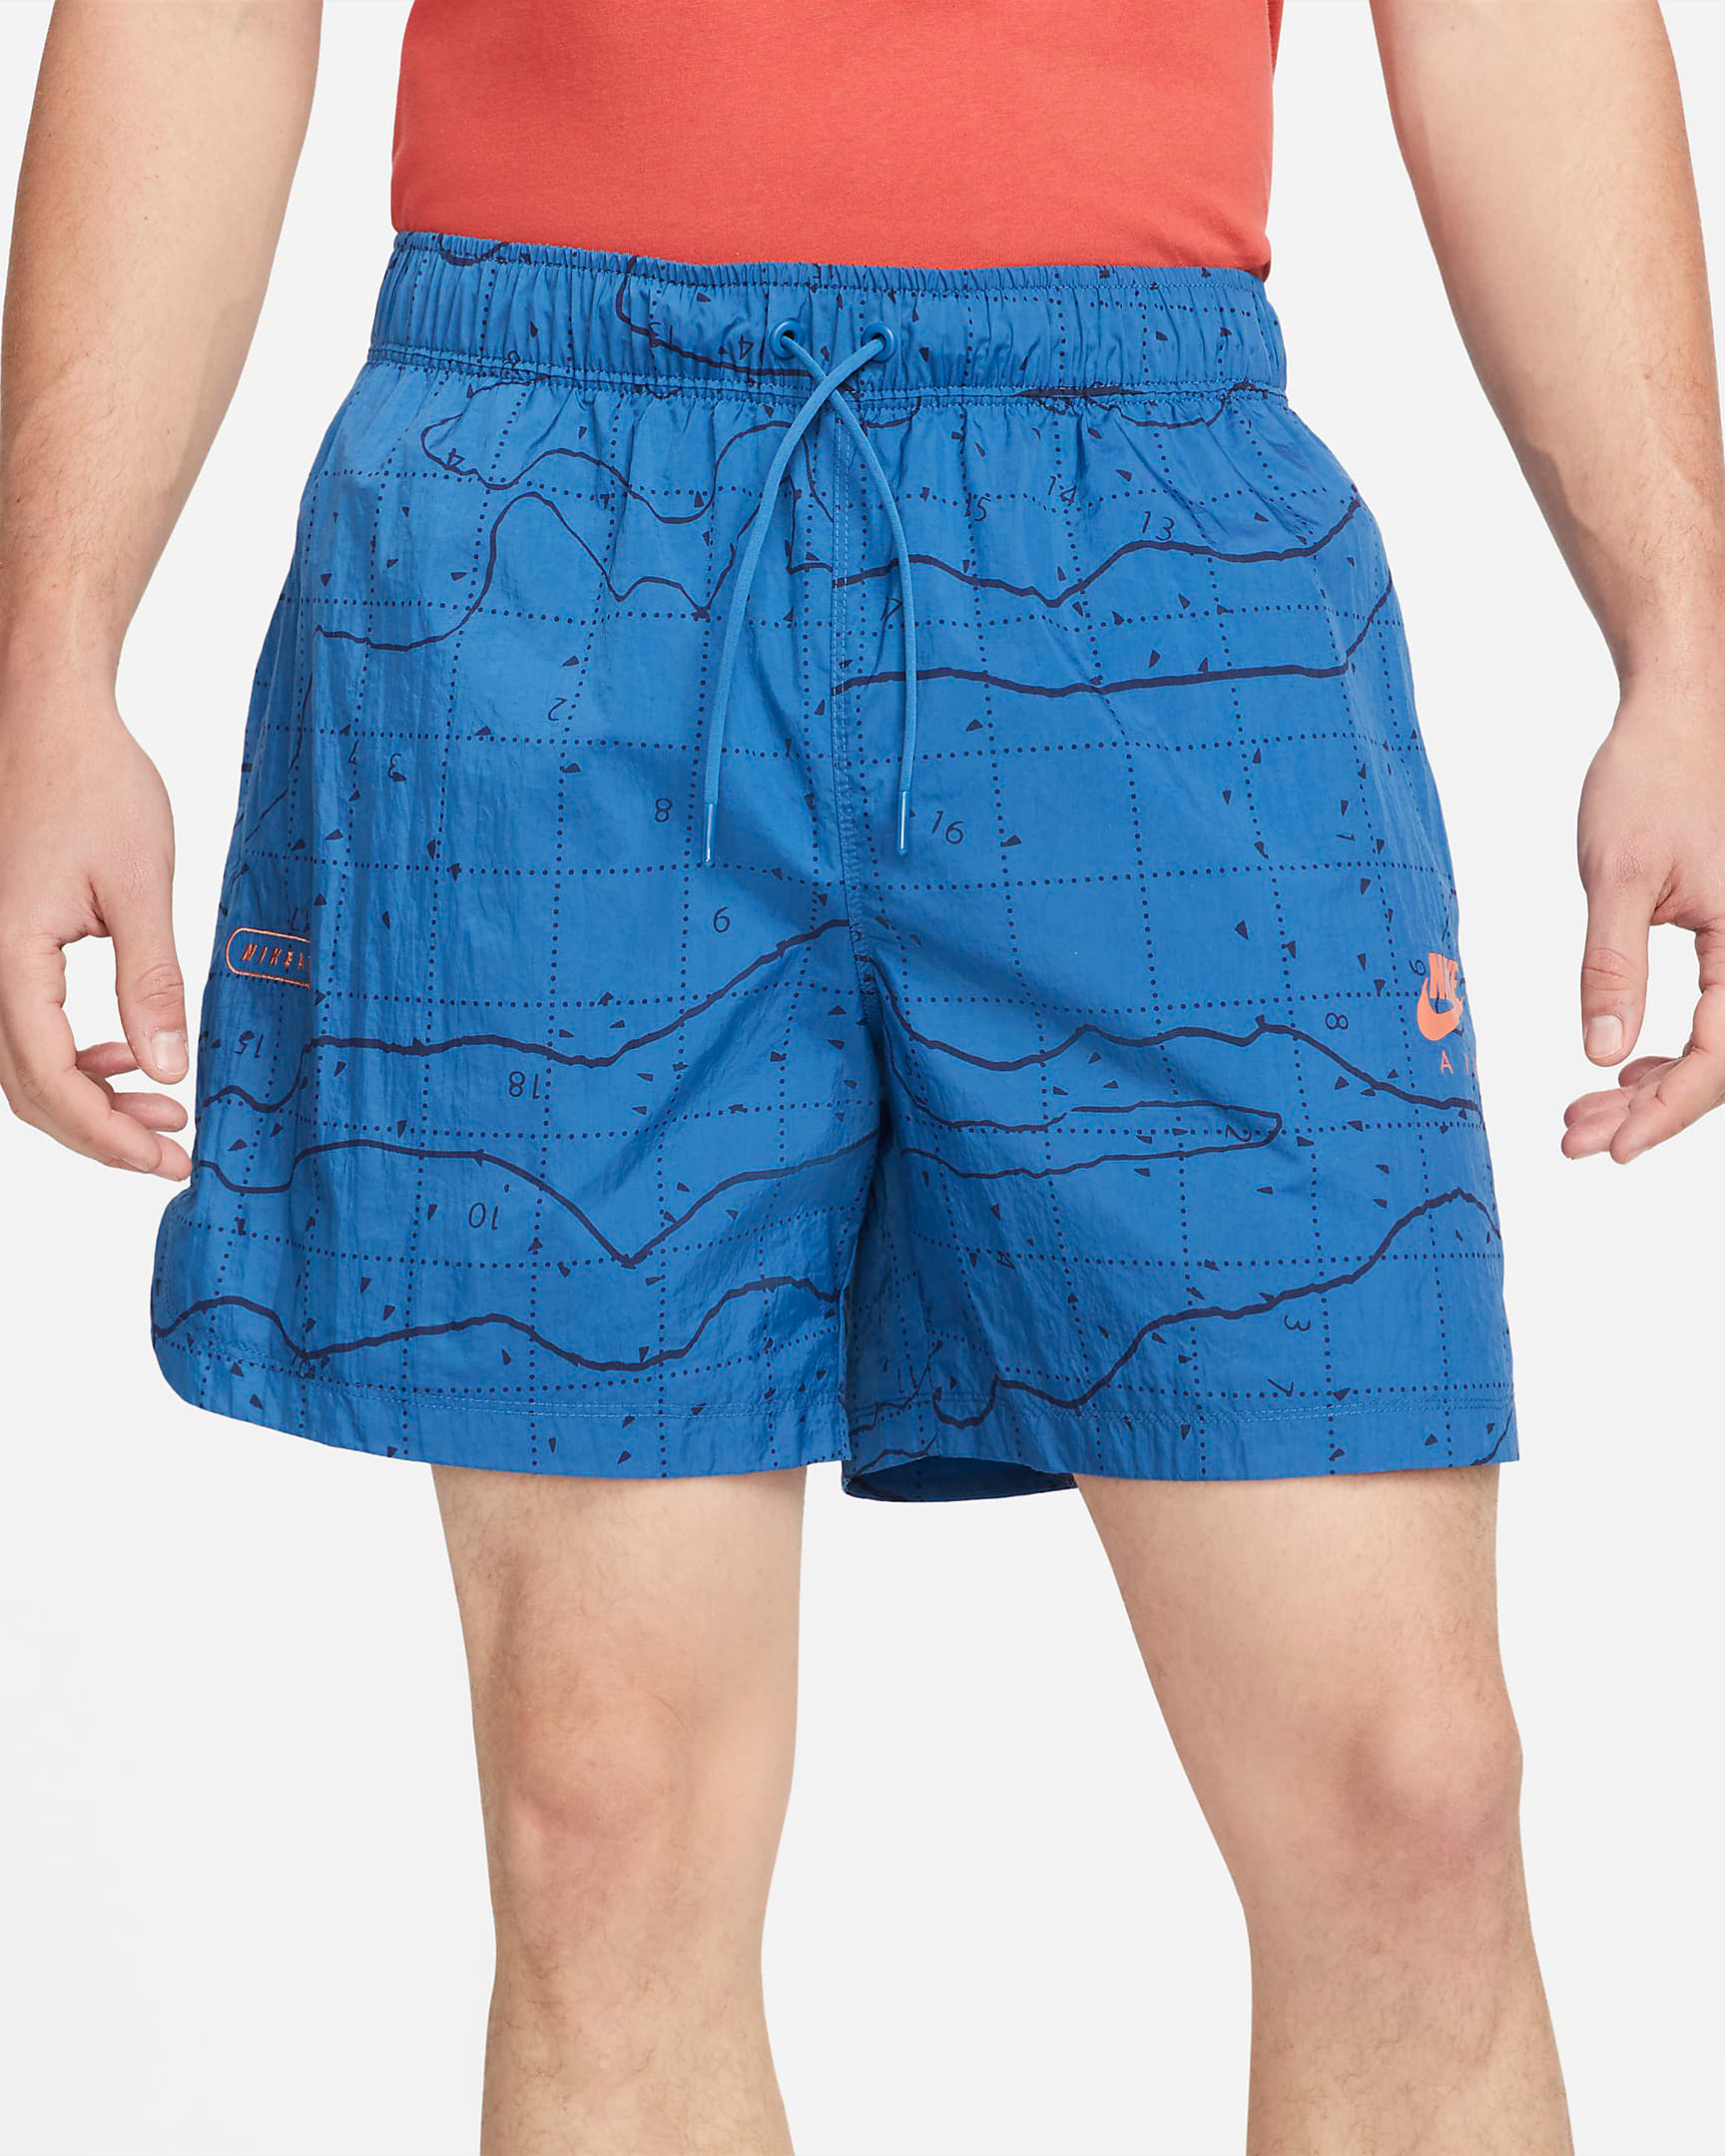 nike-air-woven-shorts-dark-marina-blue-madder-root-2